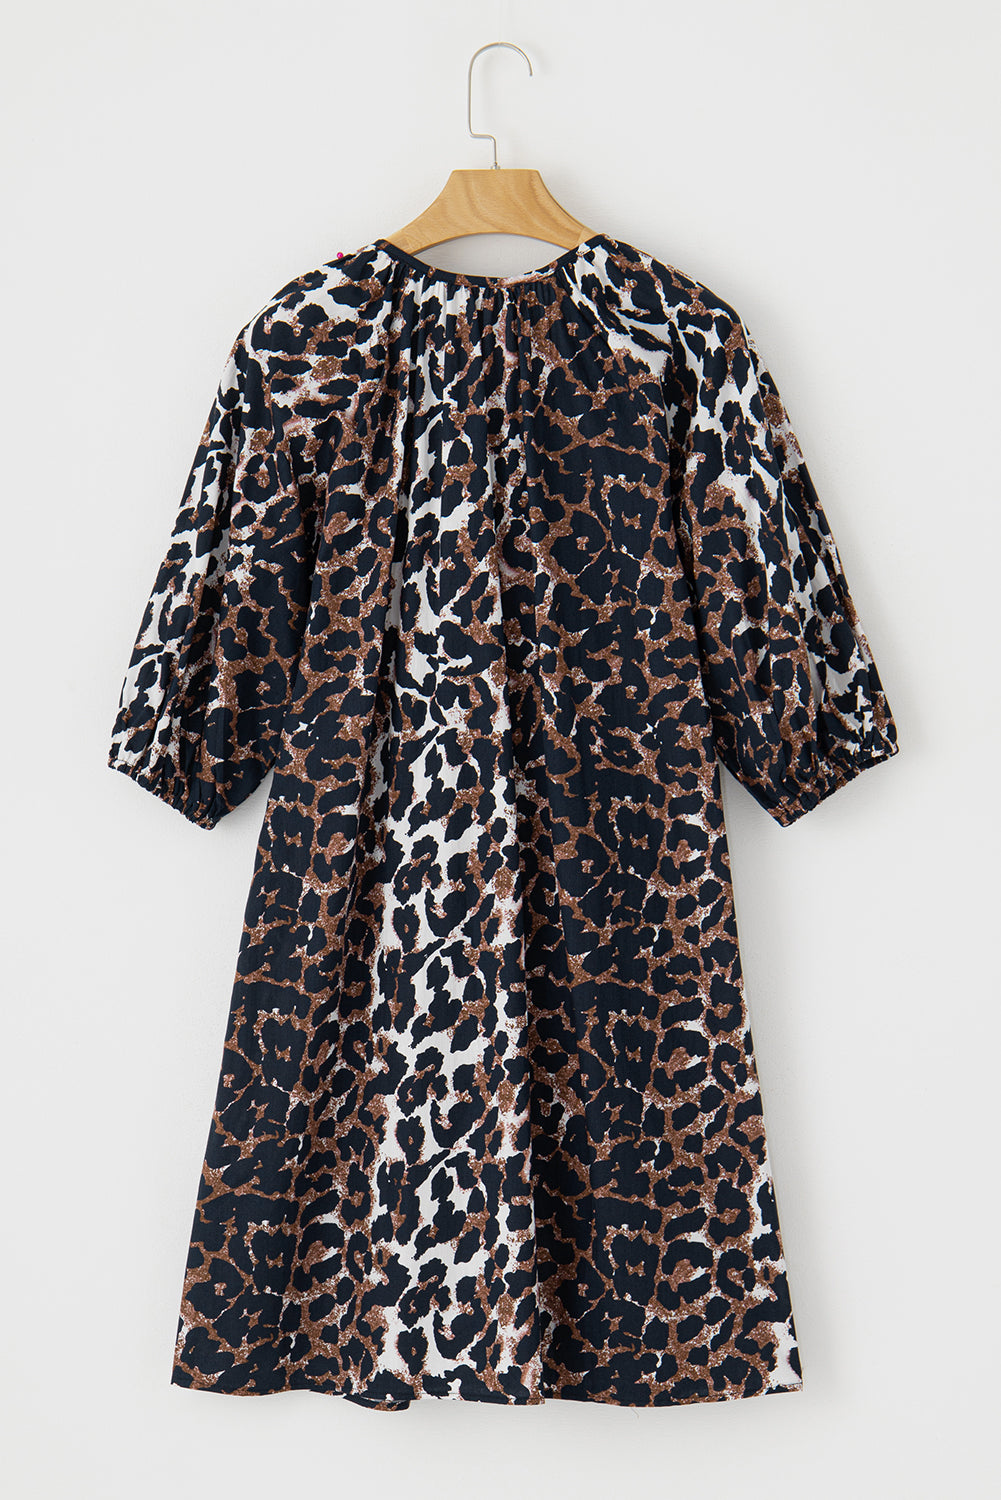 Black Leopard Puff Sleeve Buttons Front Shirt Dress